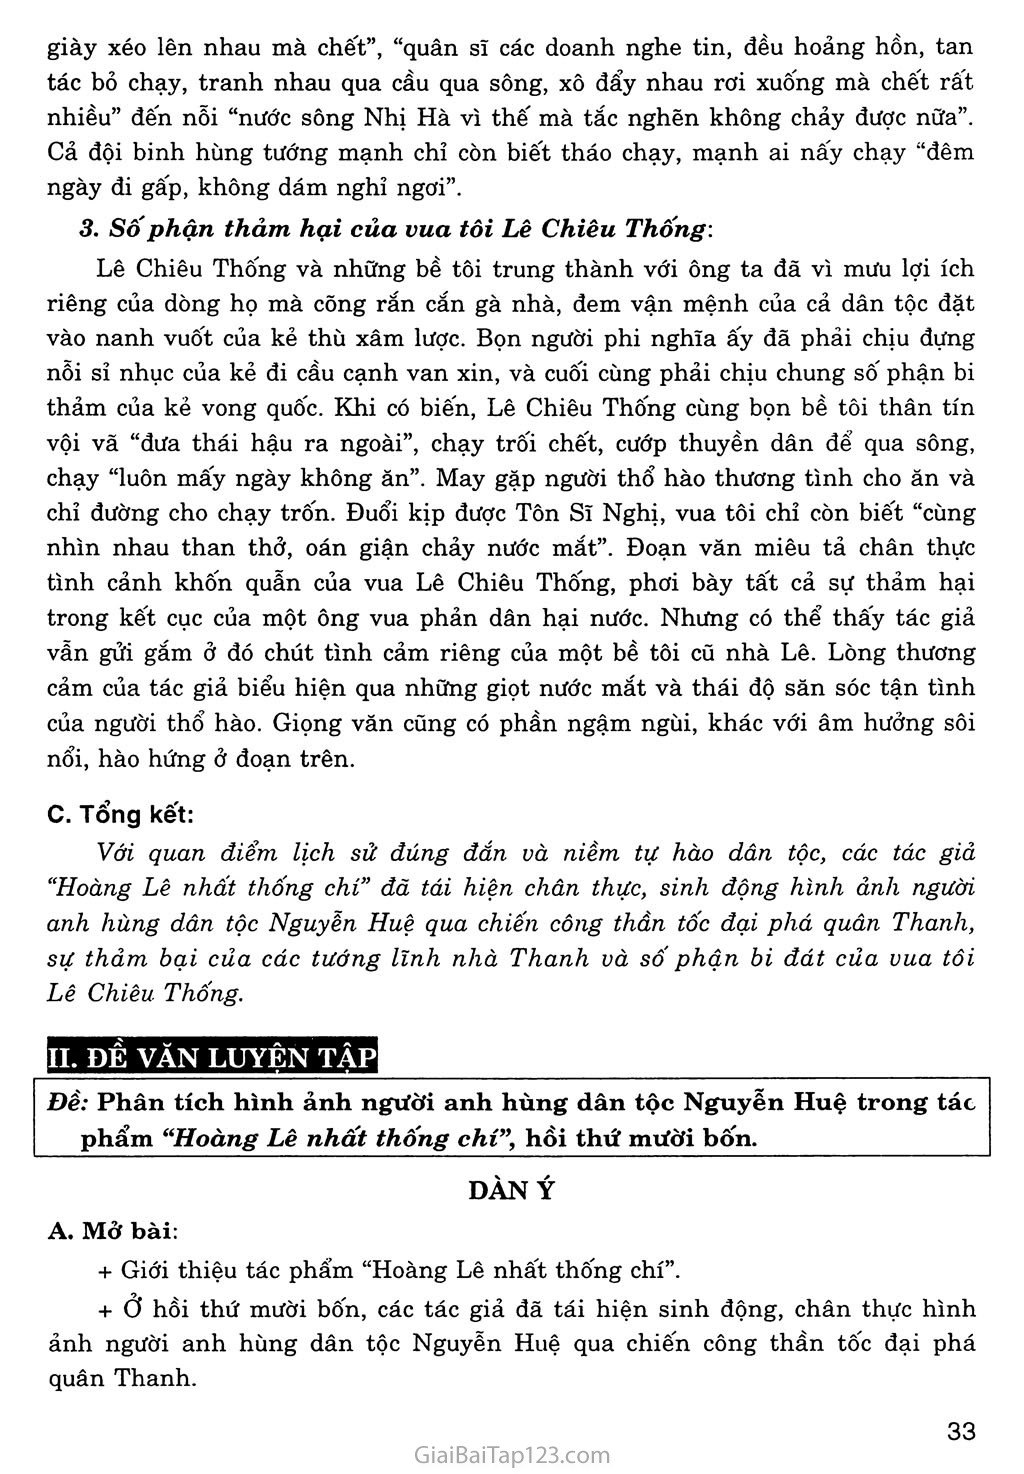 Hoàng Lê nhất thống chí - Hồi thứ mười bốn (trích) trang 6